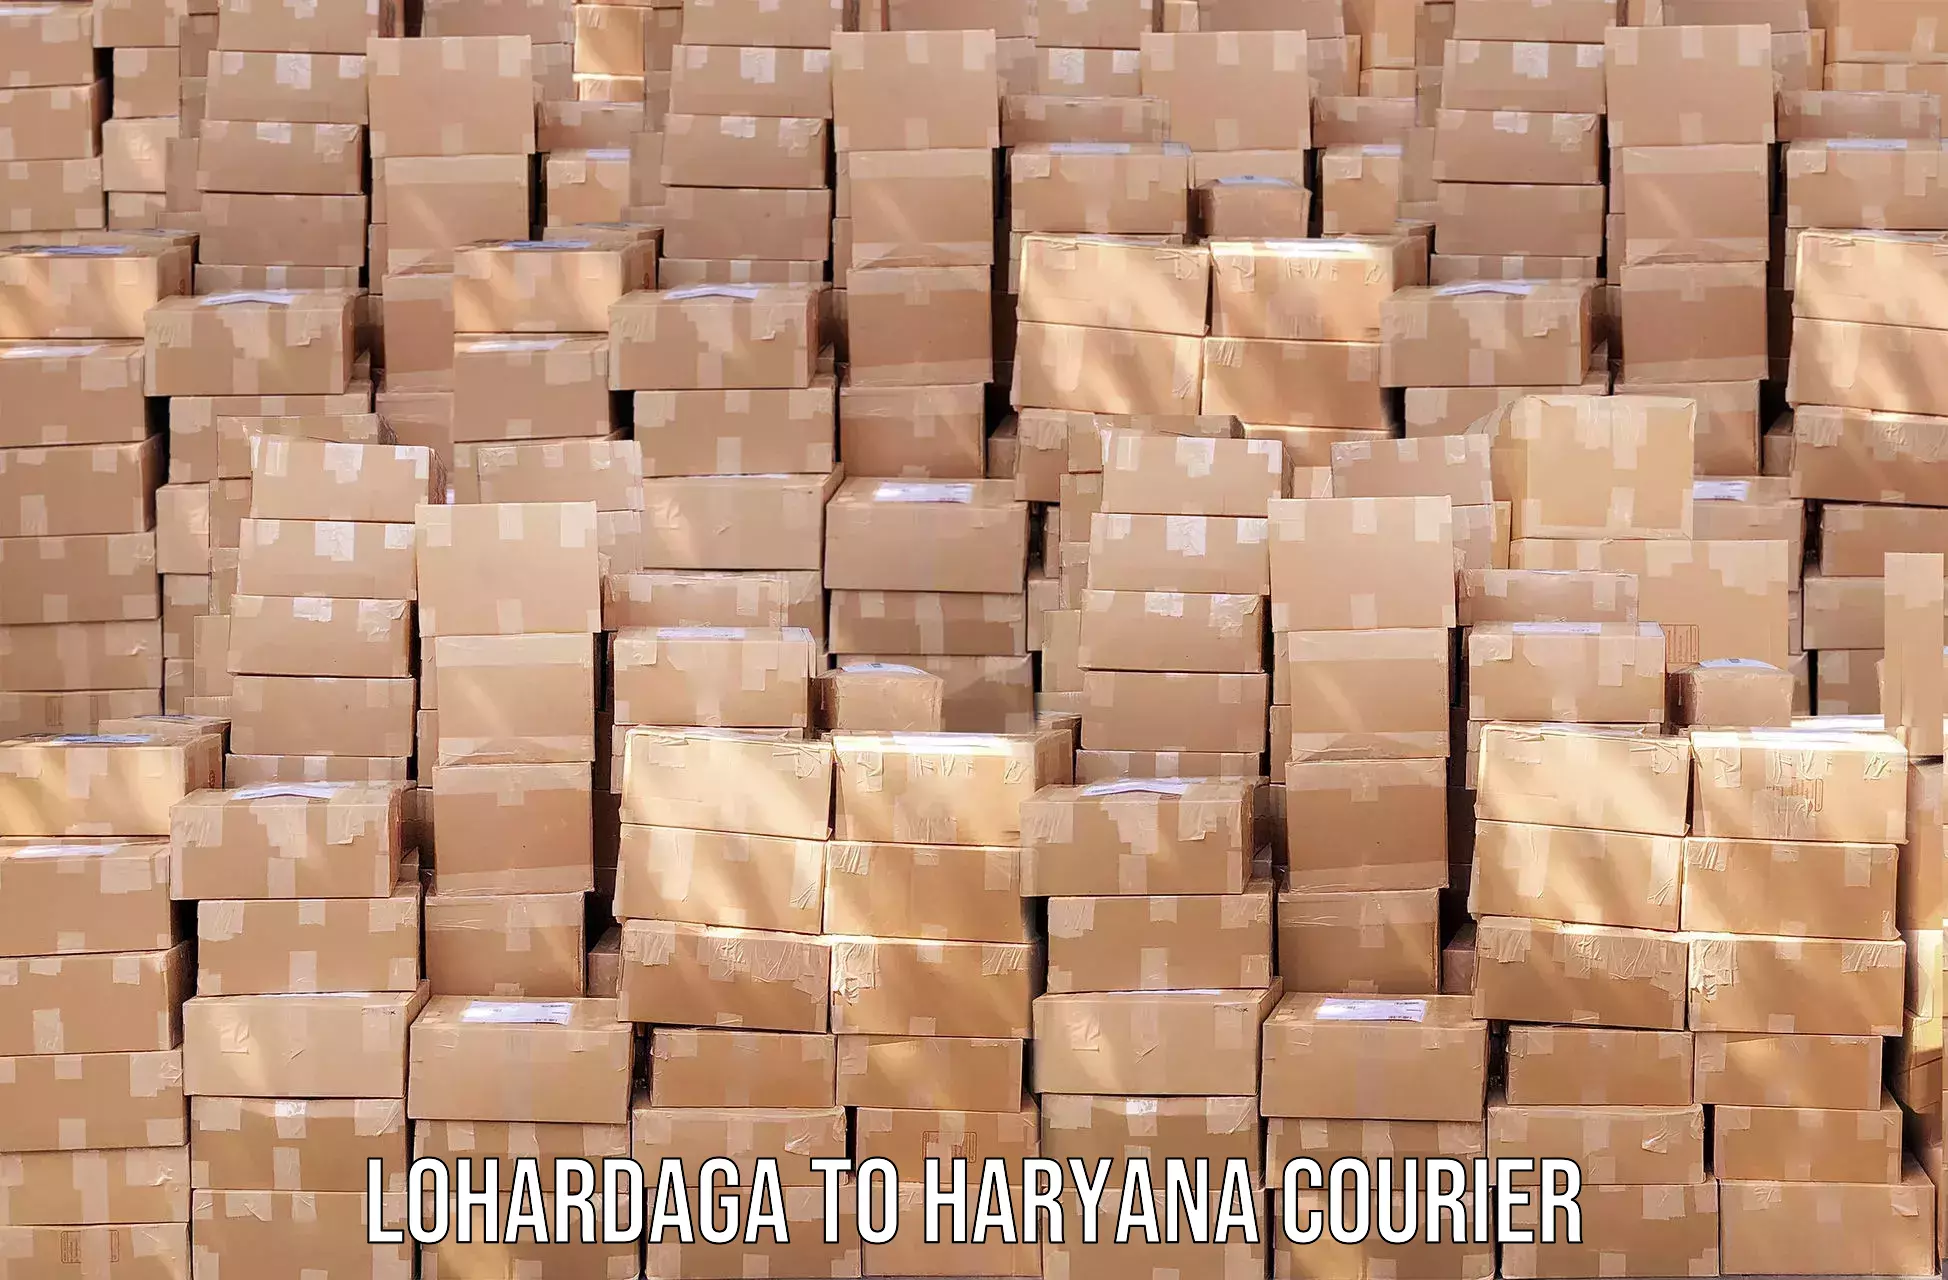 Professional courier handling Lohardaga to Kurukshetra